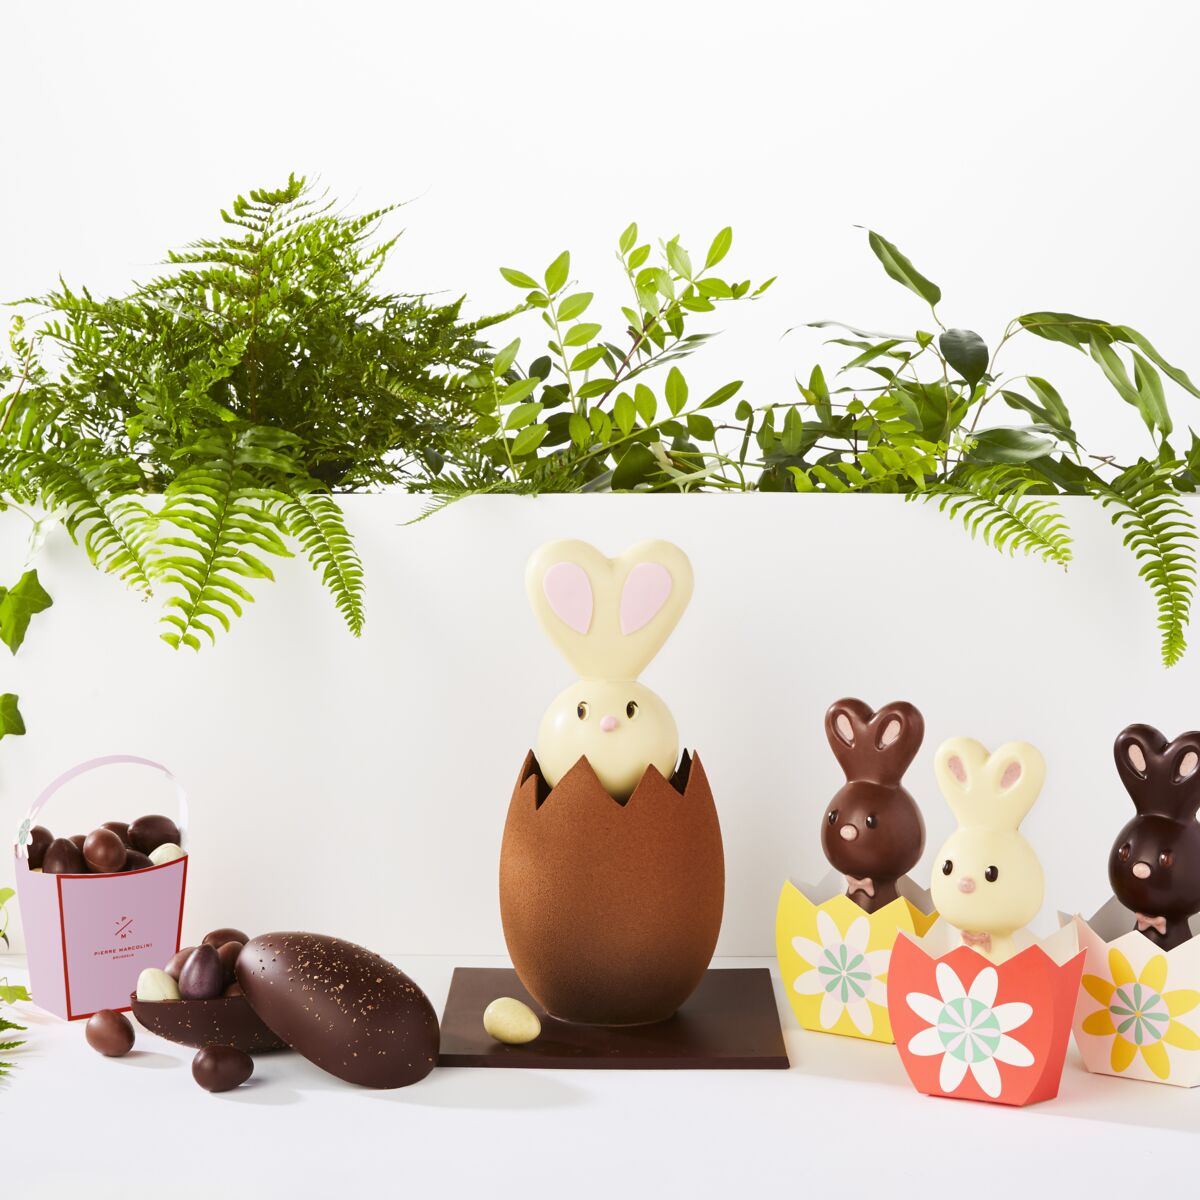 Œufs, lapins, cloches : pourquoi mange-t-on du chocolat à Pâques ?